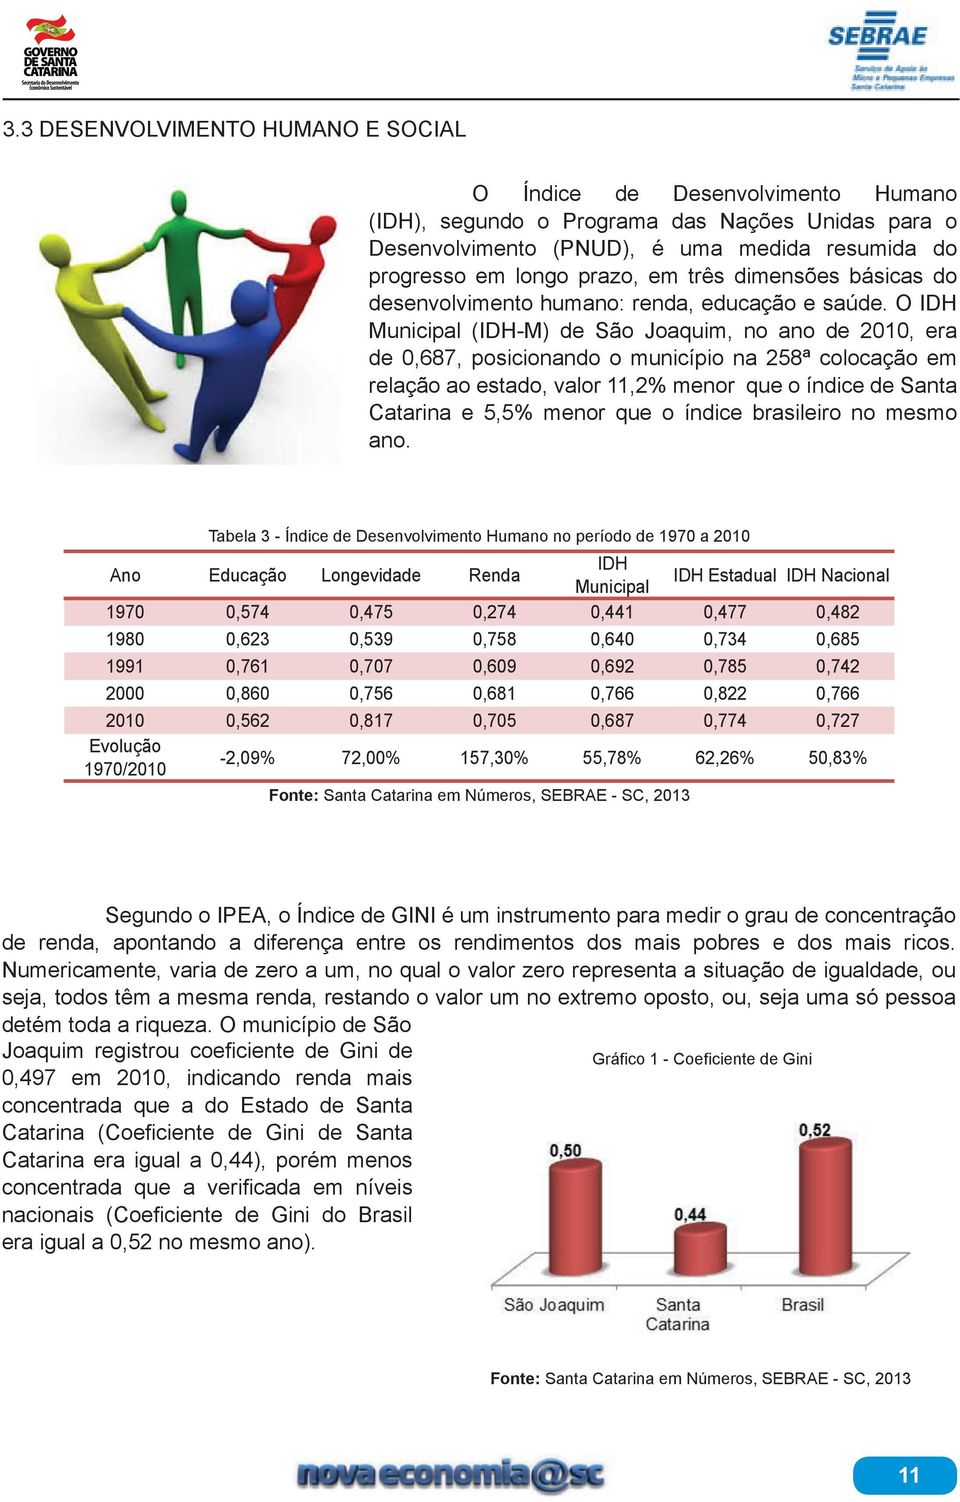 O IDH Municipal (IDH-M) de São Joaquim, no ano de 2010, era de 0,687, posicionando o município na 258ª colocação em relação ao estado, valor 11,2% menor que o índice de Santa Catarina e 5,5% menor